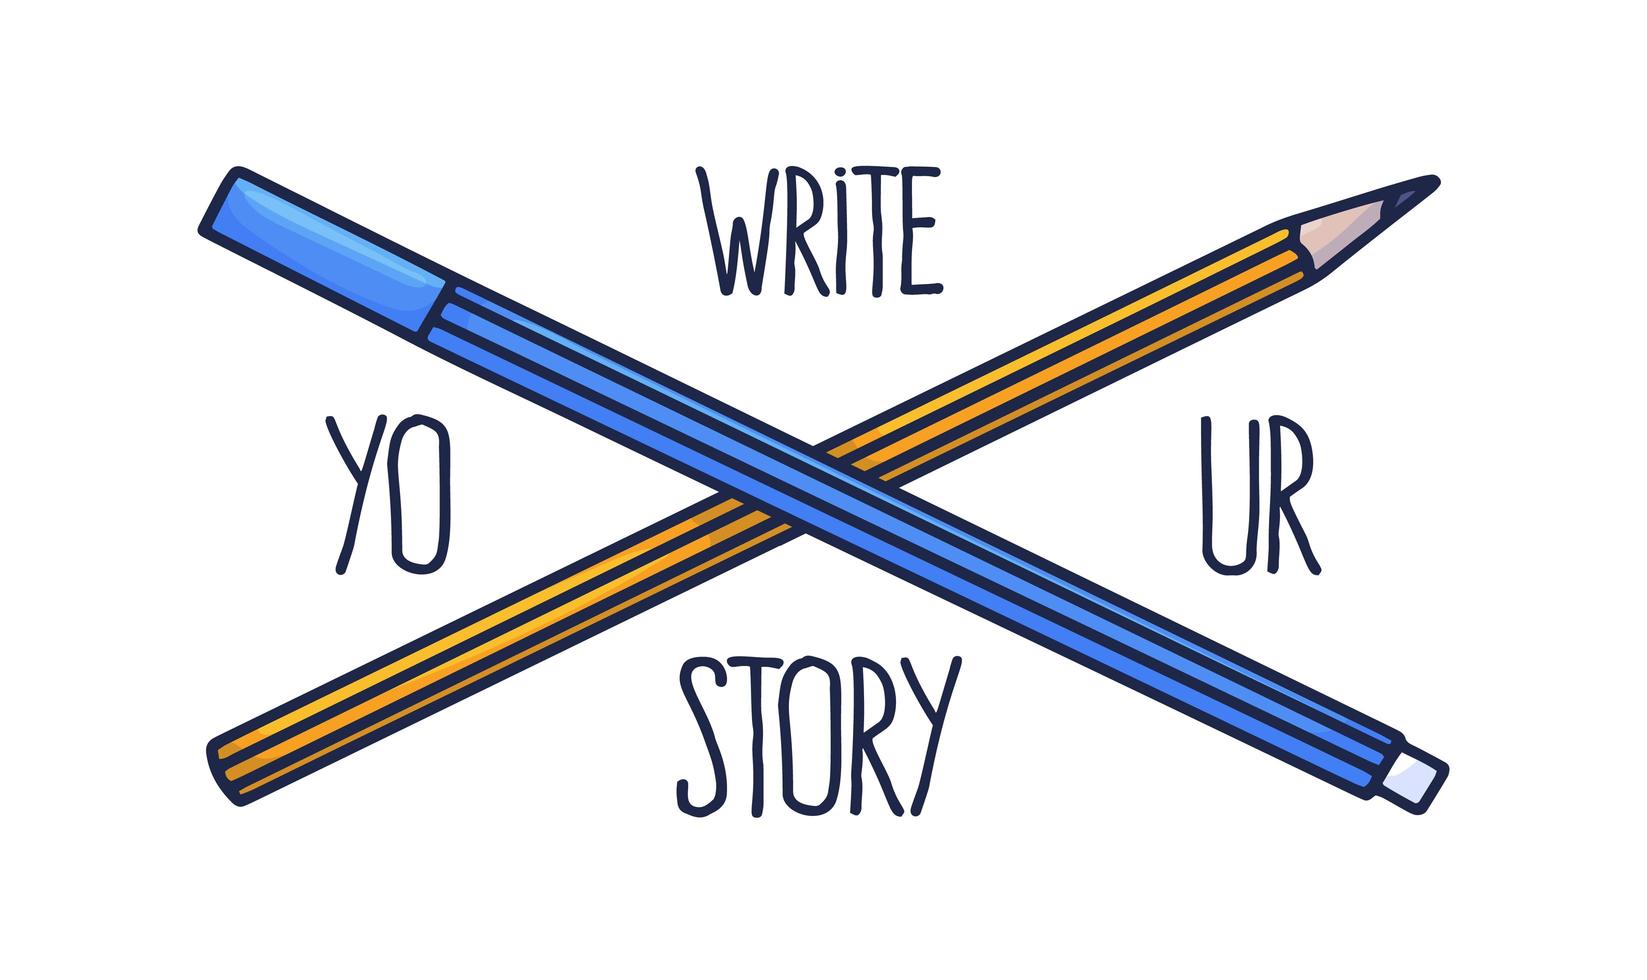 Schreiben Sie Ihren Story-Slogan. Schriftzug und handgezeichnete zwei Bleistifte in Gelb und Blau, die im Doodle-Stil hergestellt werden vektor